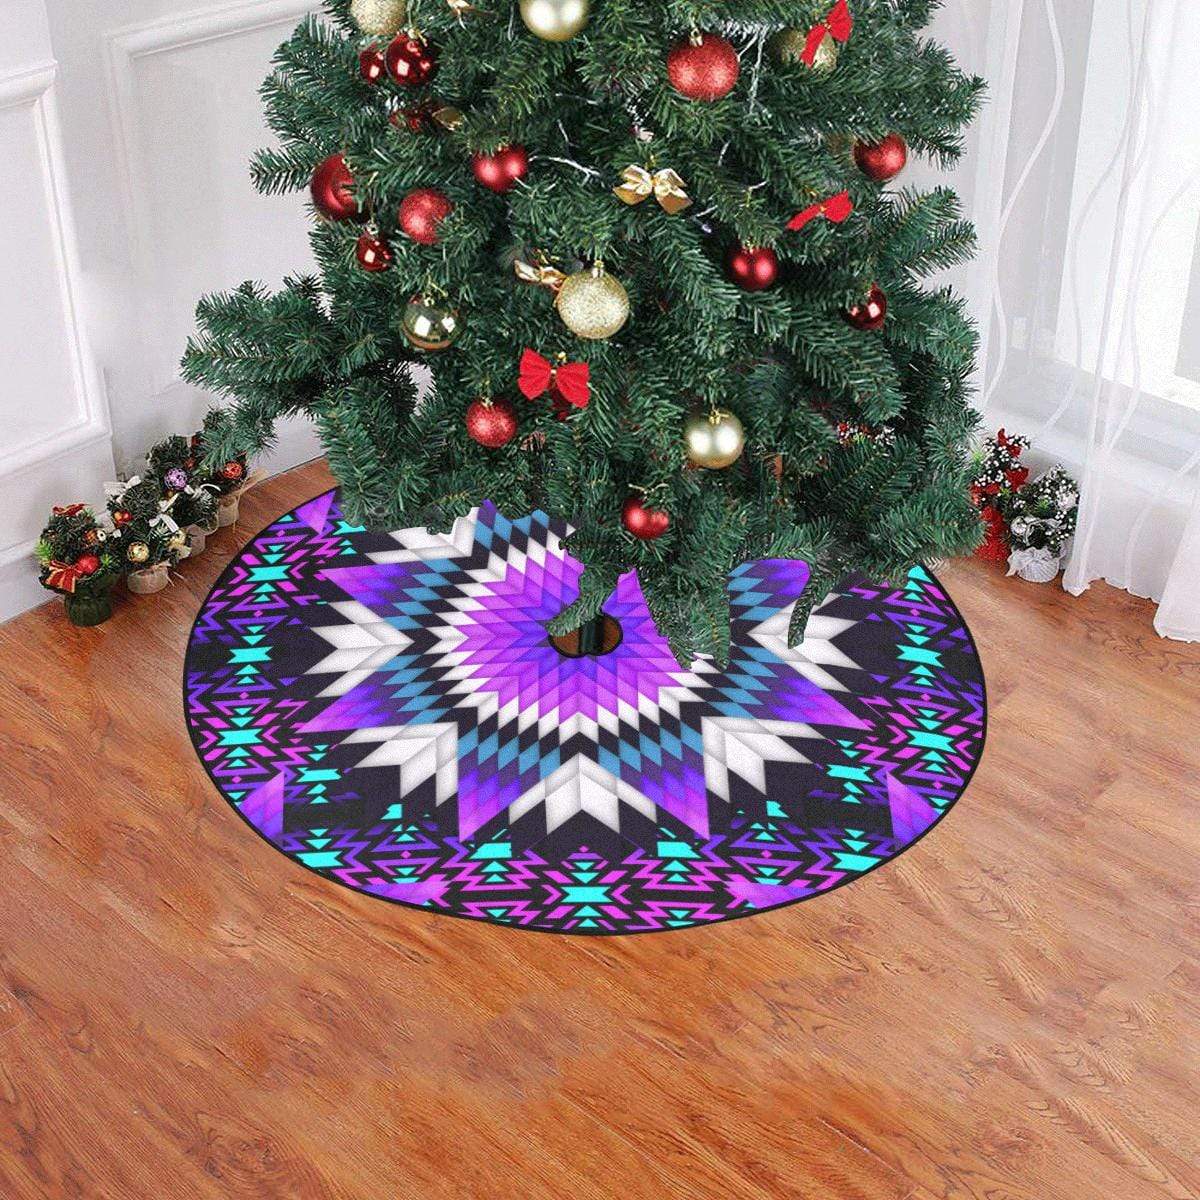 Morning Starfire Christmas Tree Skirt 47" x 47" Christmas Tree Skirt e-joyer 